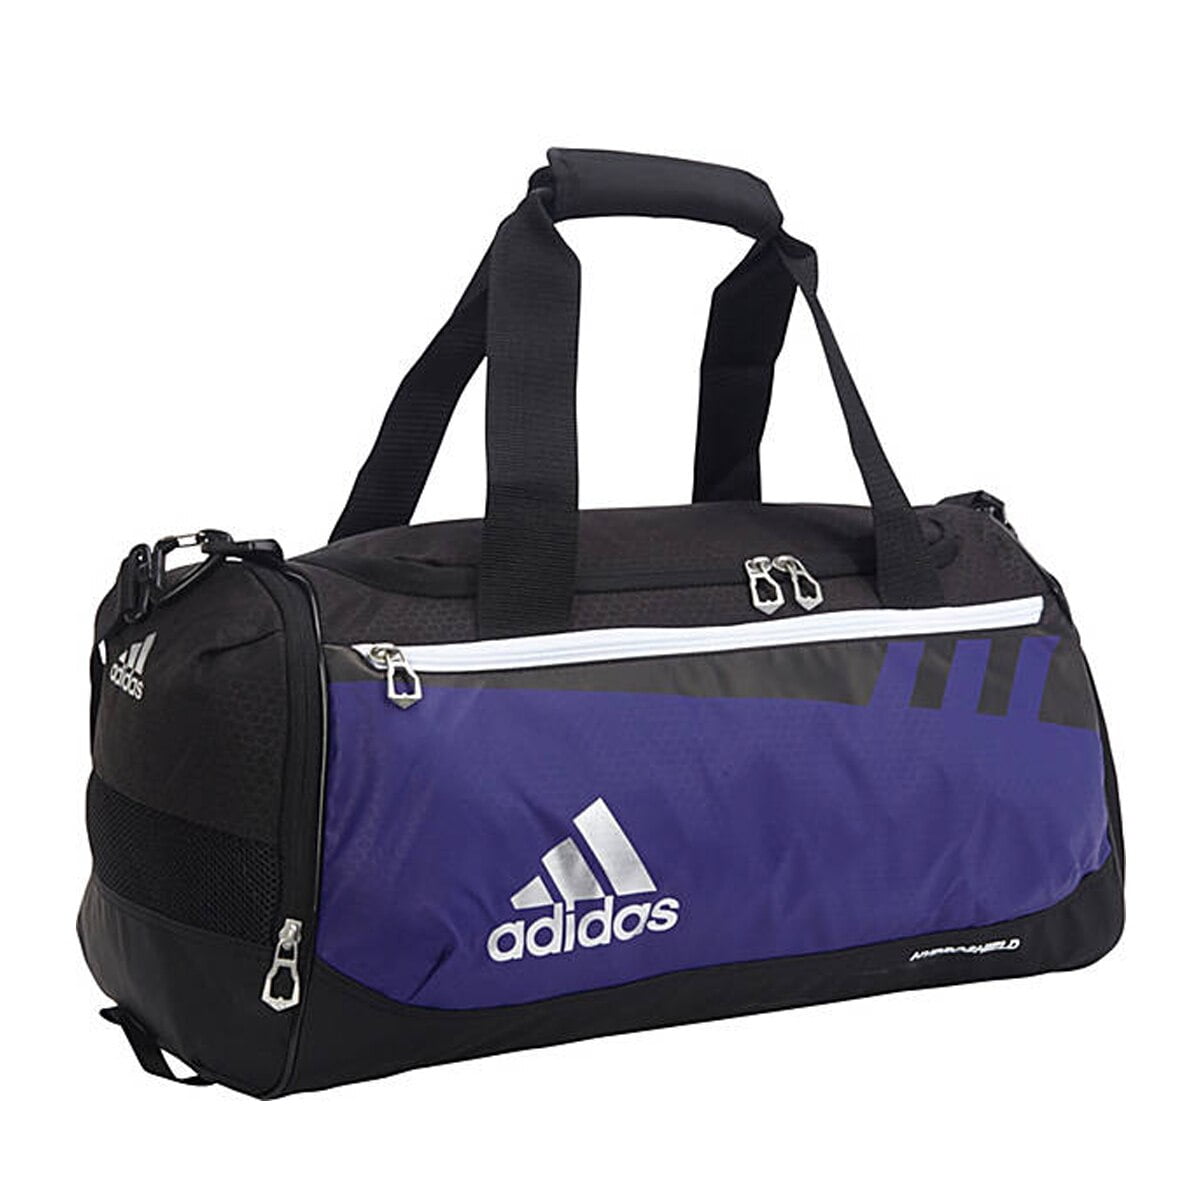 adidas team issue duffel bag small